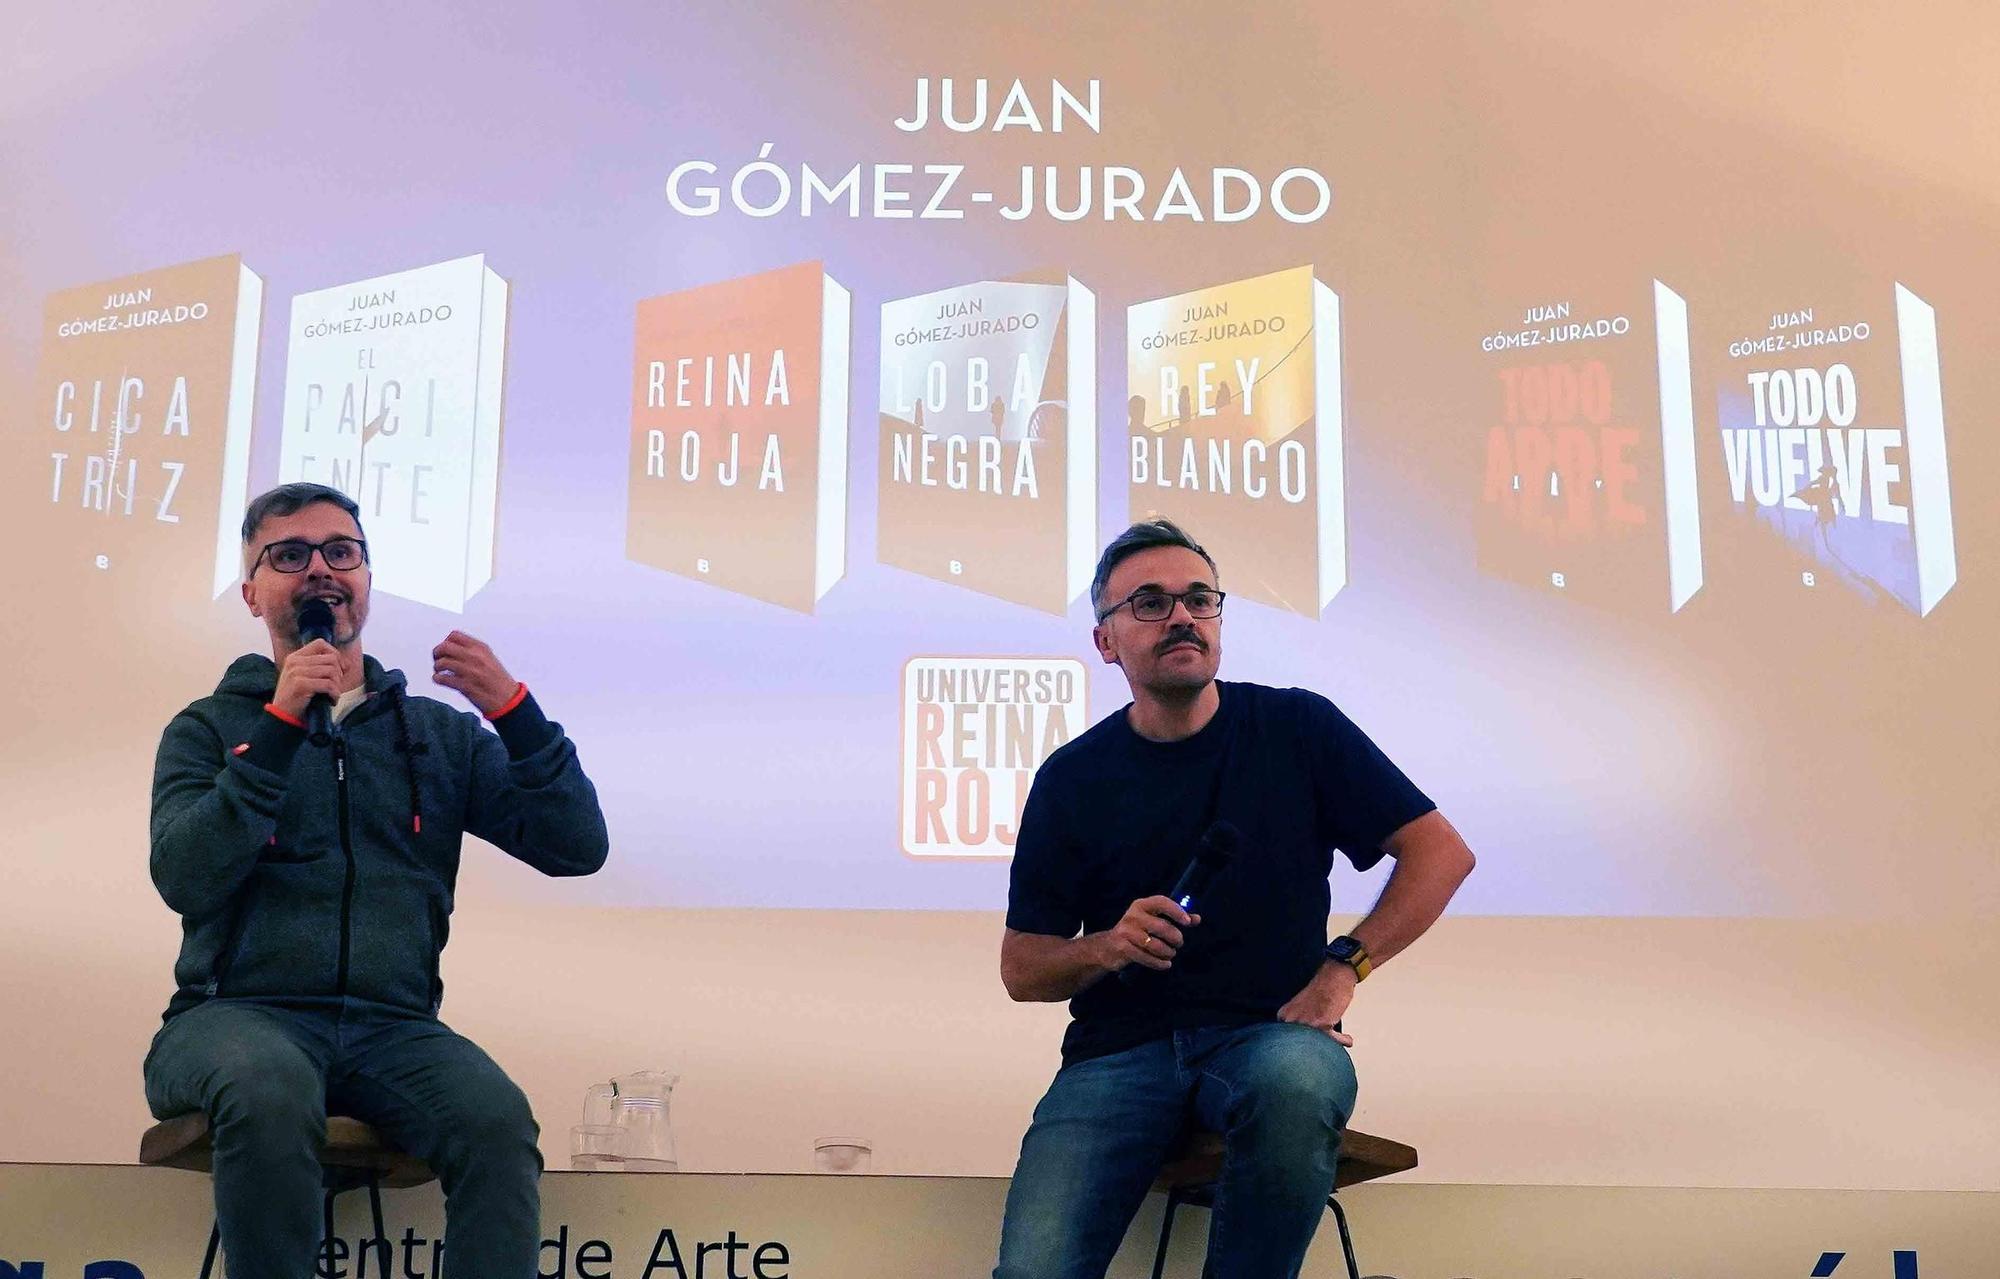 El regreso de uno de los autores preferidos de Juan Gómez-Jurado - Zenda